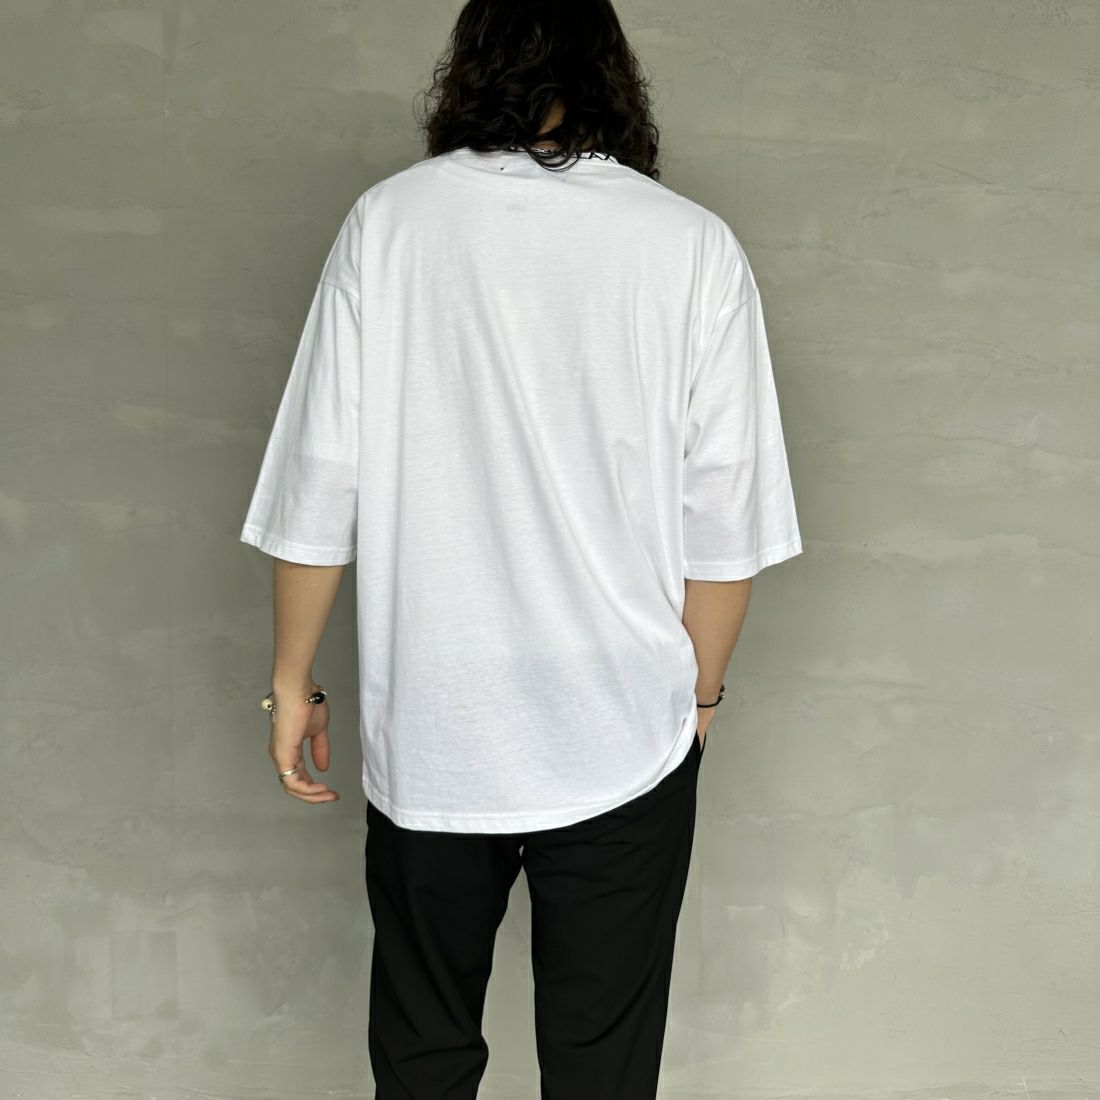 1PIU1UGUALE3 RELAX [ウノ ピゥ ウノ ウグァーレ トレ] 別注 ネックブランドロゴ ショートスリーブTシャツ [UST-24036IN-JF] WHITE &&モデル身長：173cm 着用サイズ：L&&